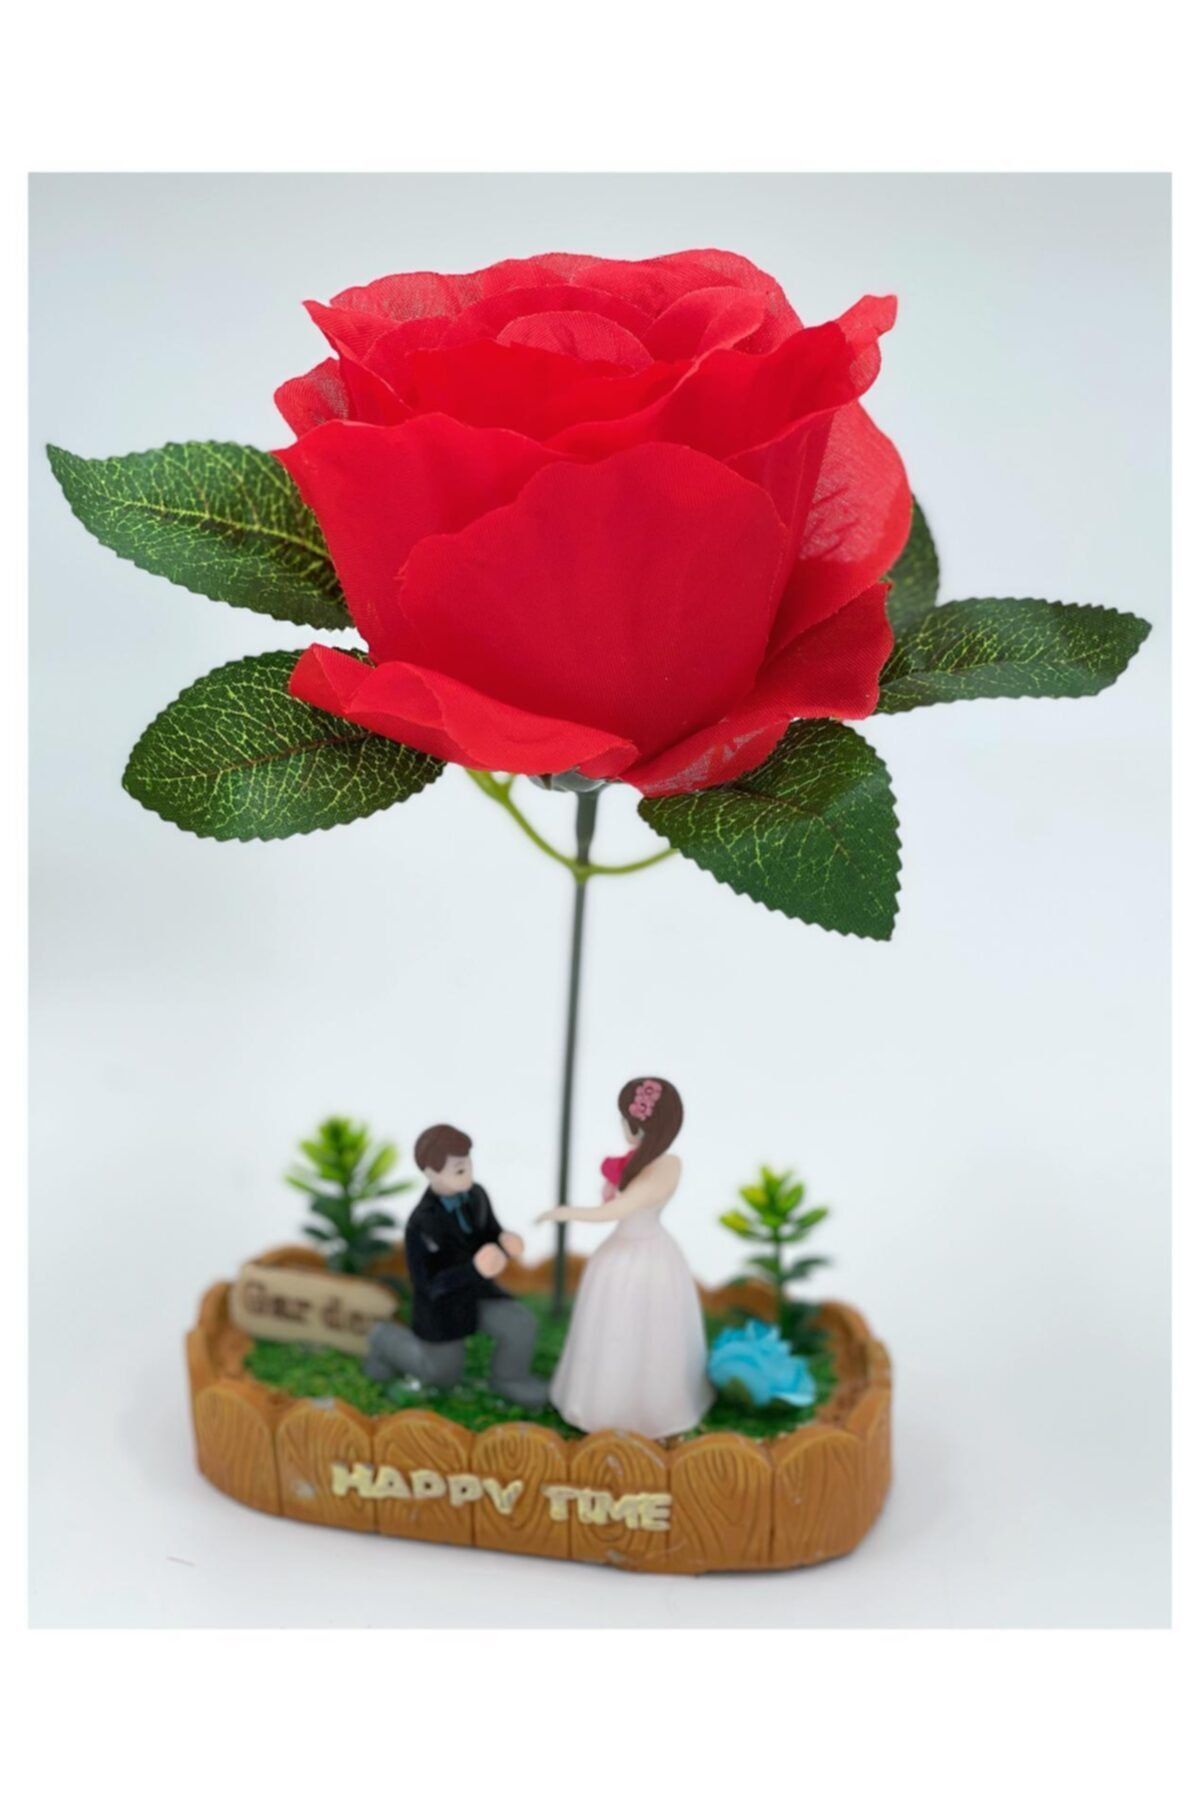 QUEEN AKSESUAR Aşk Masalı Sevgililer Günü Teklif Ilanı Aşk Biblo Dekorasyon Kırmızı Gül Çiçek Kutulu Çiçek